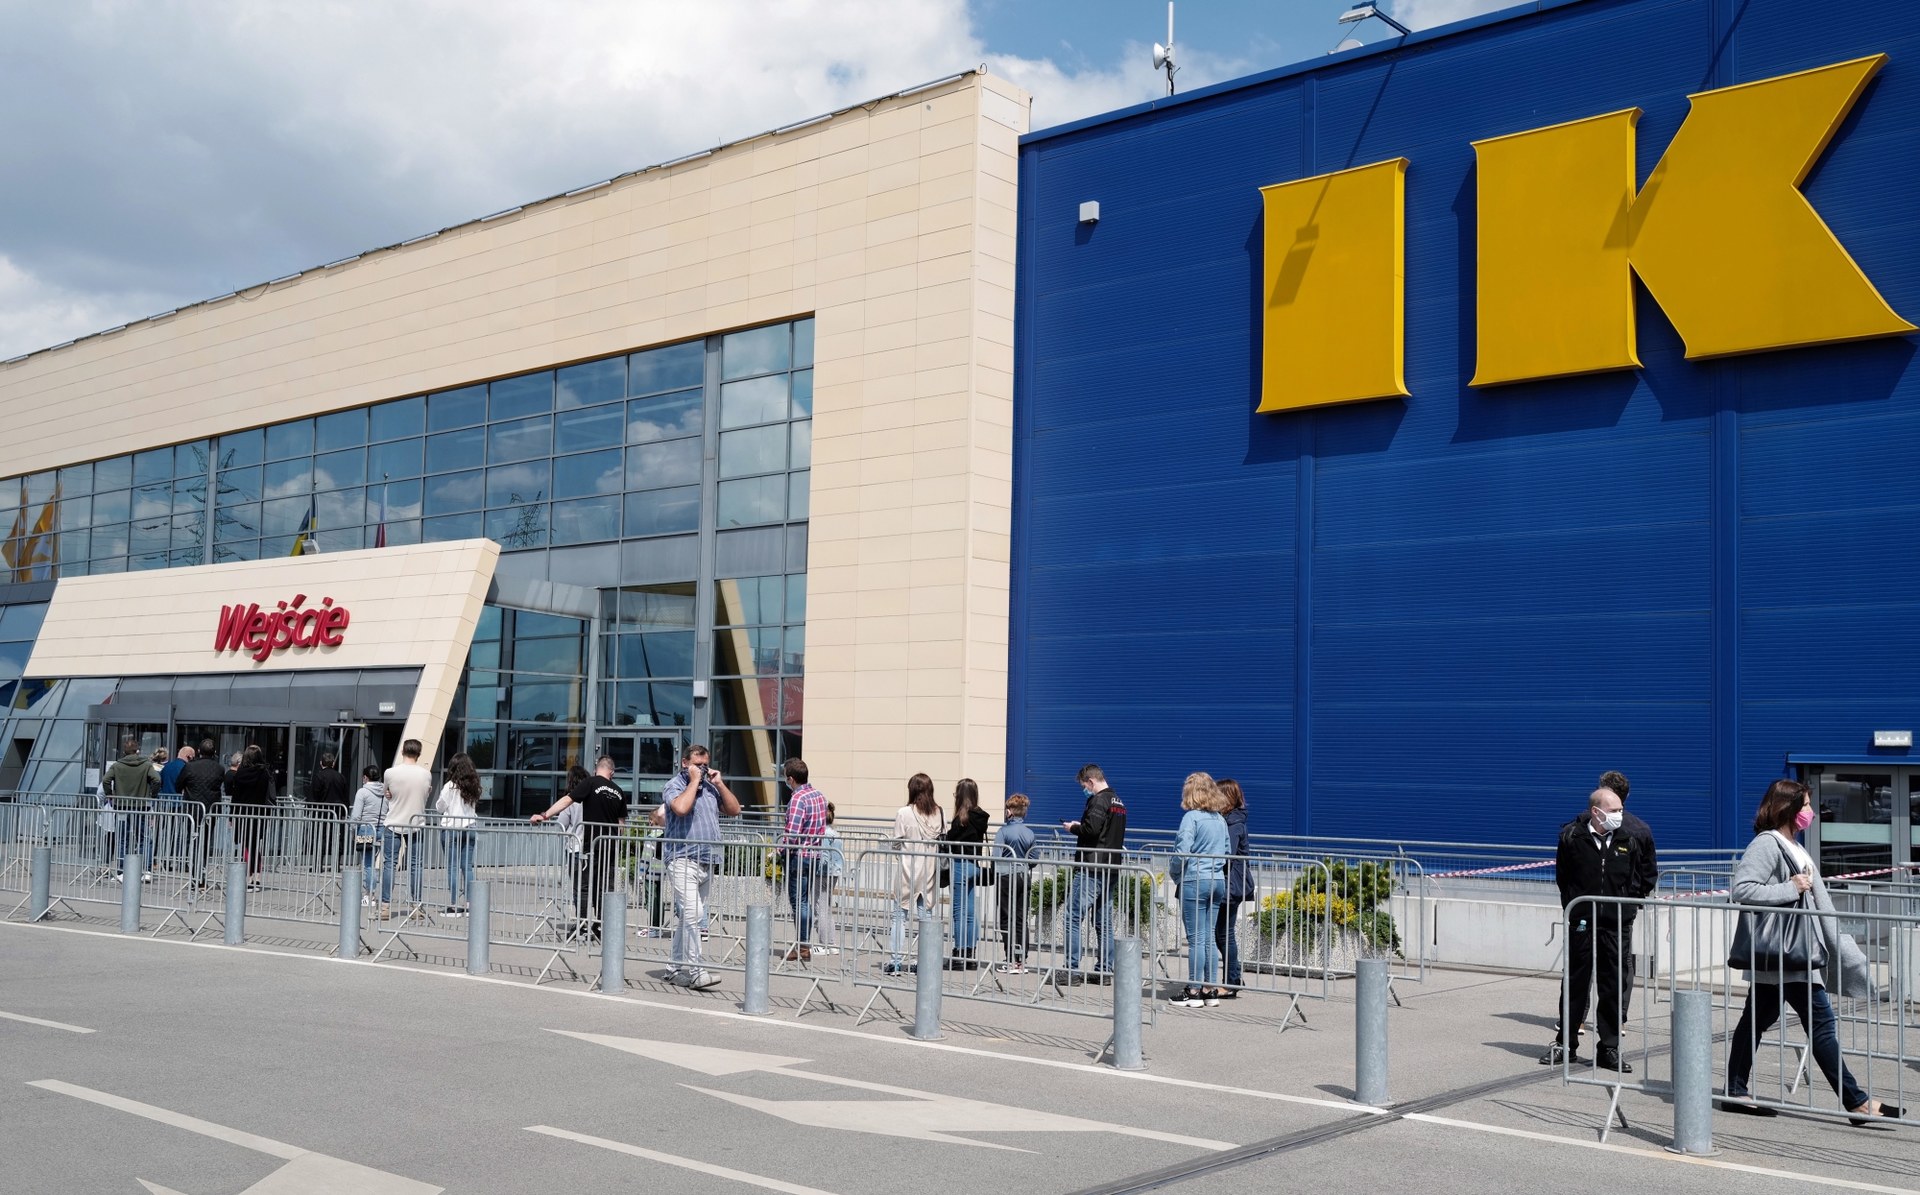 Ikea Ponownie Otwarta Efekt Gigantyczna Kolejka Rmf 24